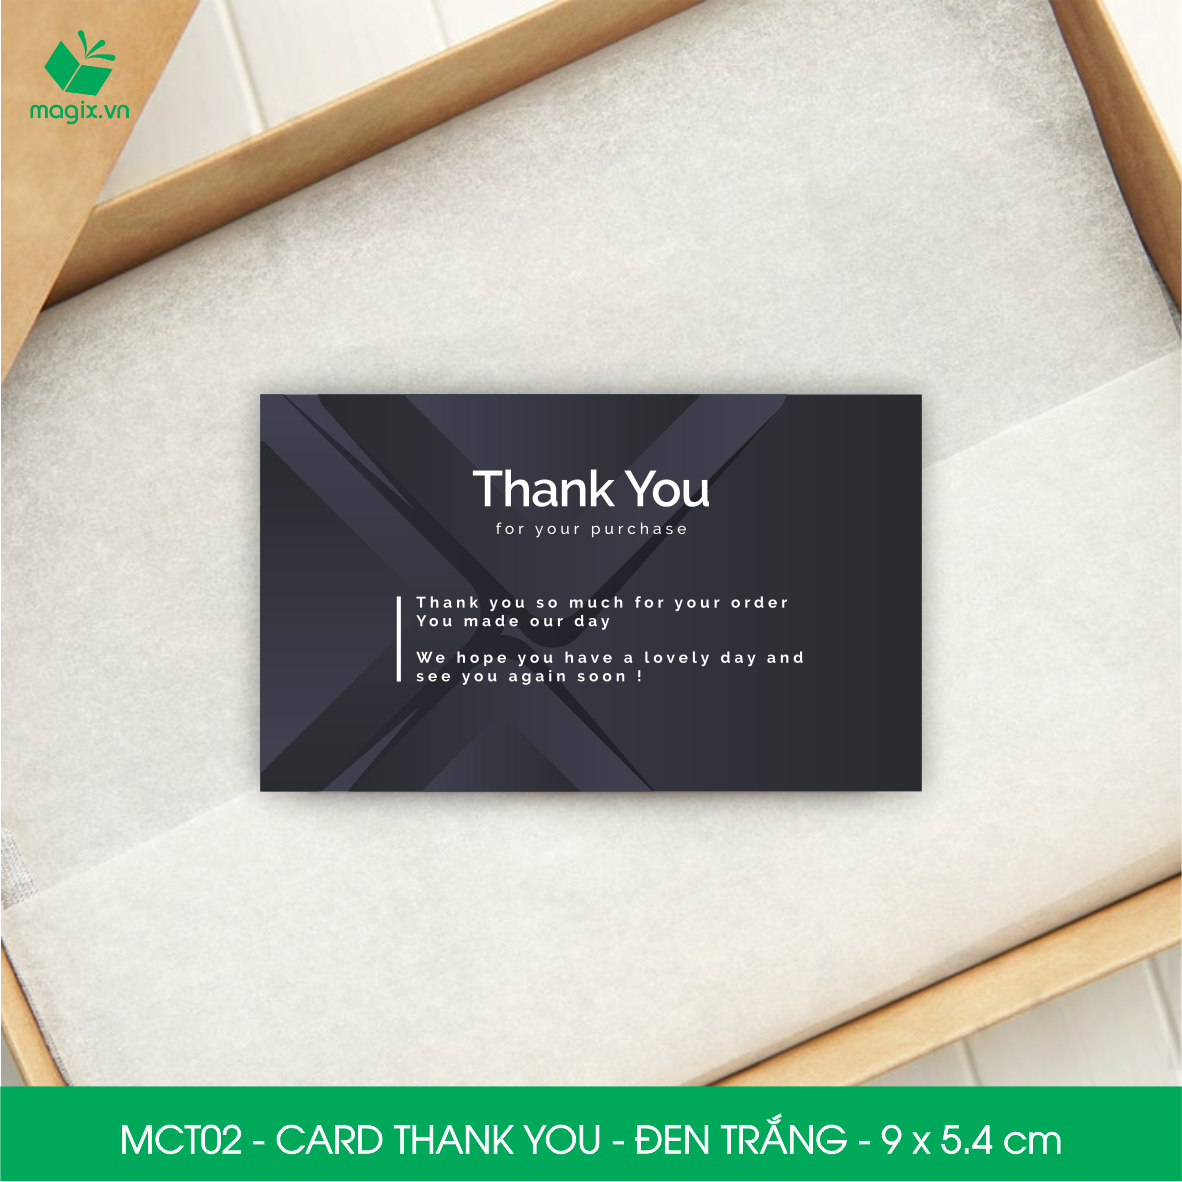 MCT02 - 9x5.4 cm - 50 Card Thank you, Thiệp cảm ơn khách hàng, card cám ơn cứng cáp sang trọng